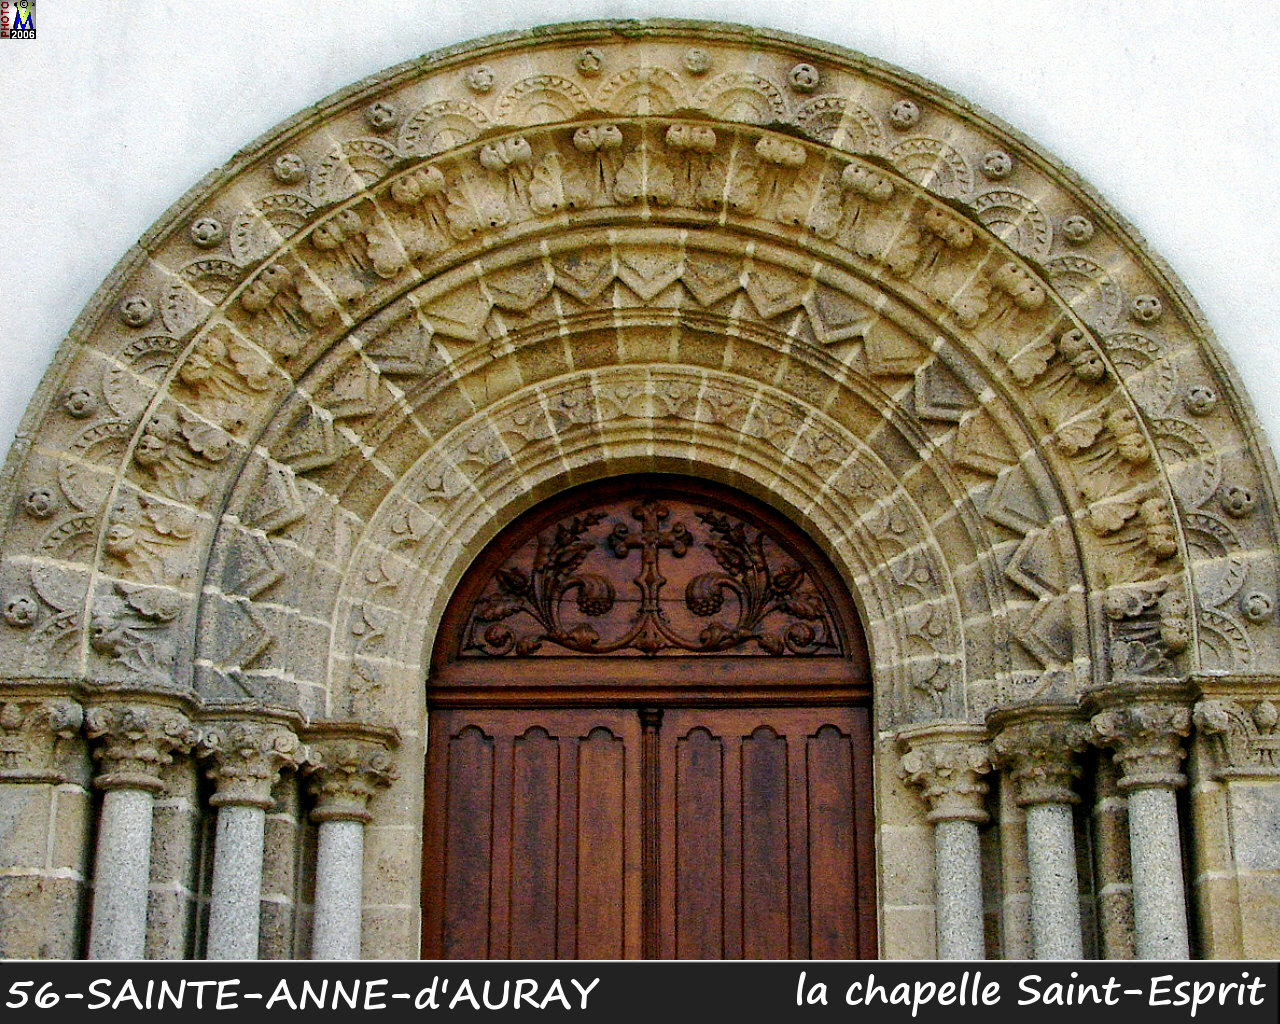 56Ste-ANNE-AURAY_chapelle_esprit_102.jpg